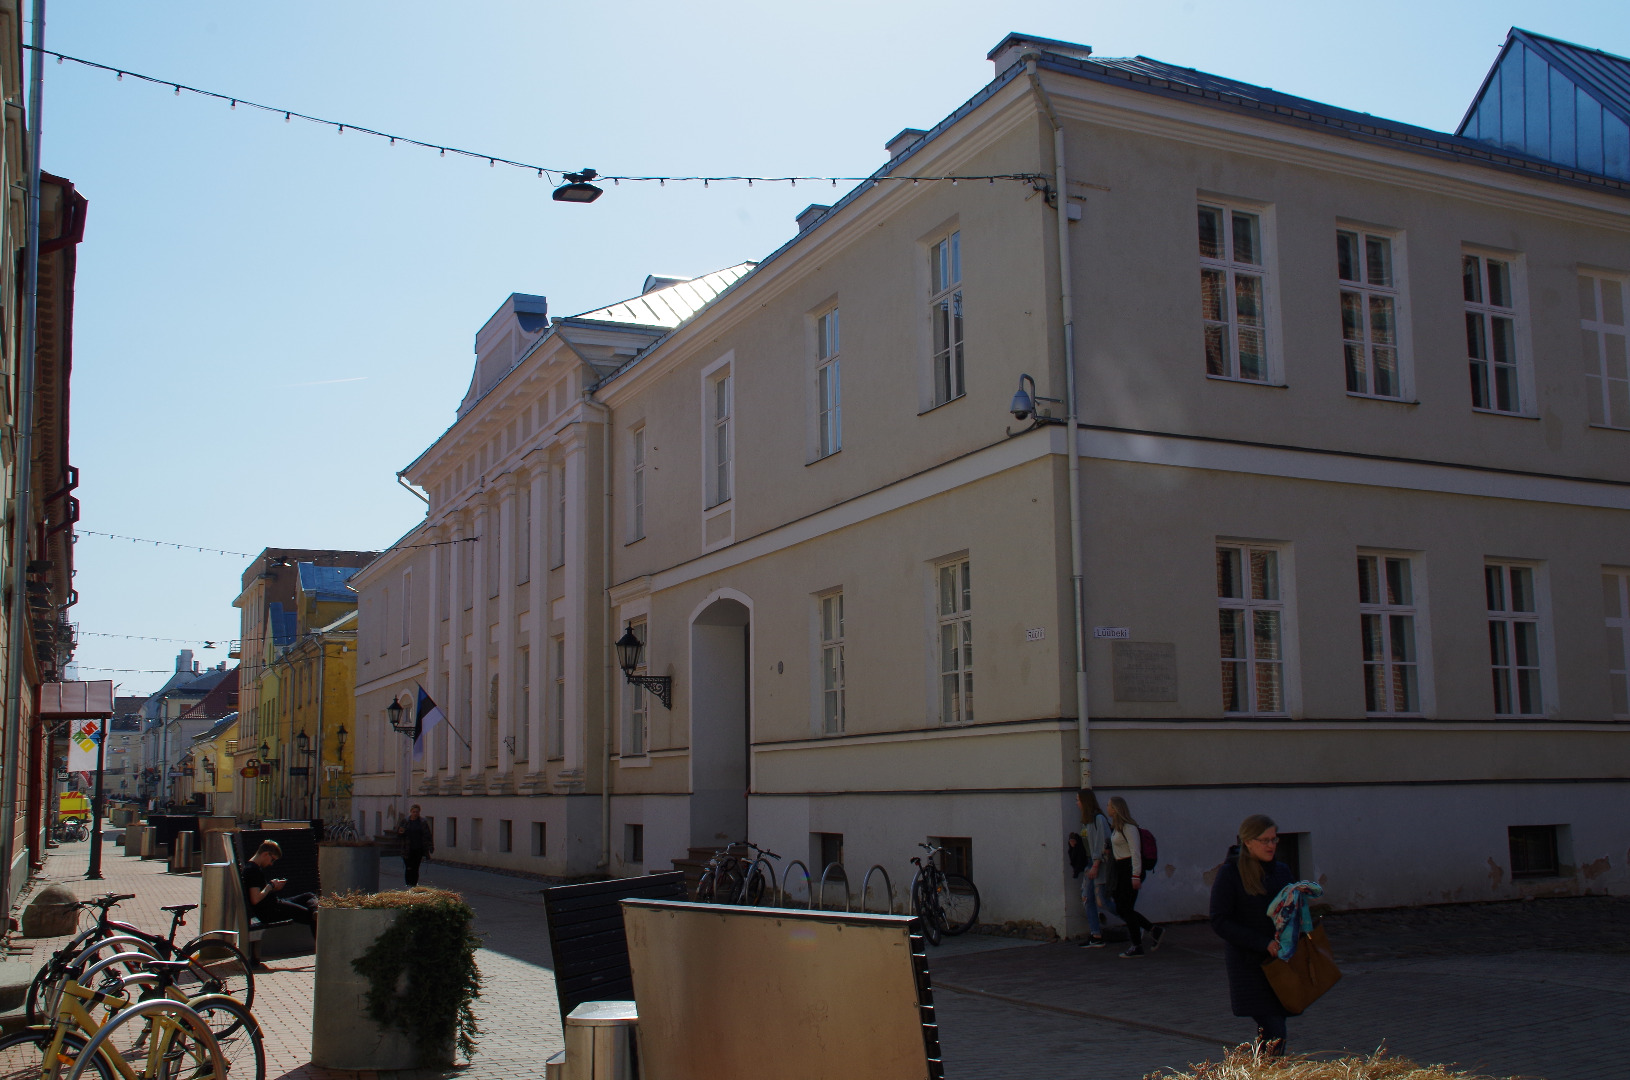 Treffneri gümnaasium Rüütli tänaval. Tartu, 1920-1935. rephoto